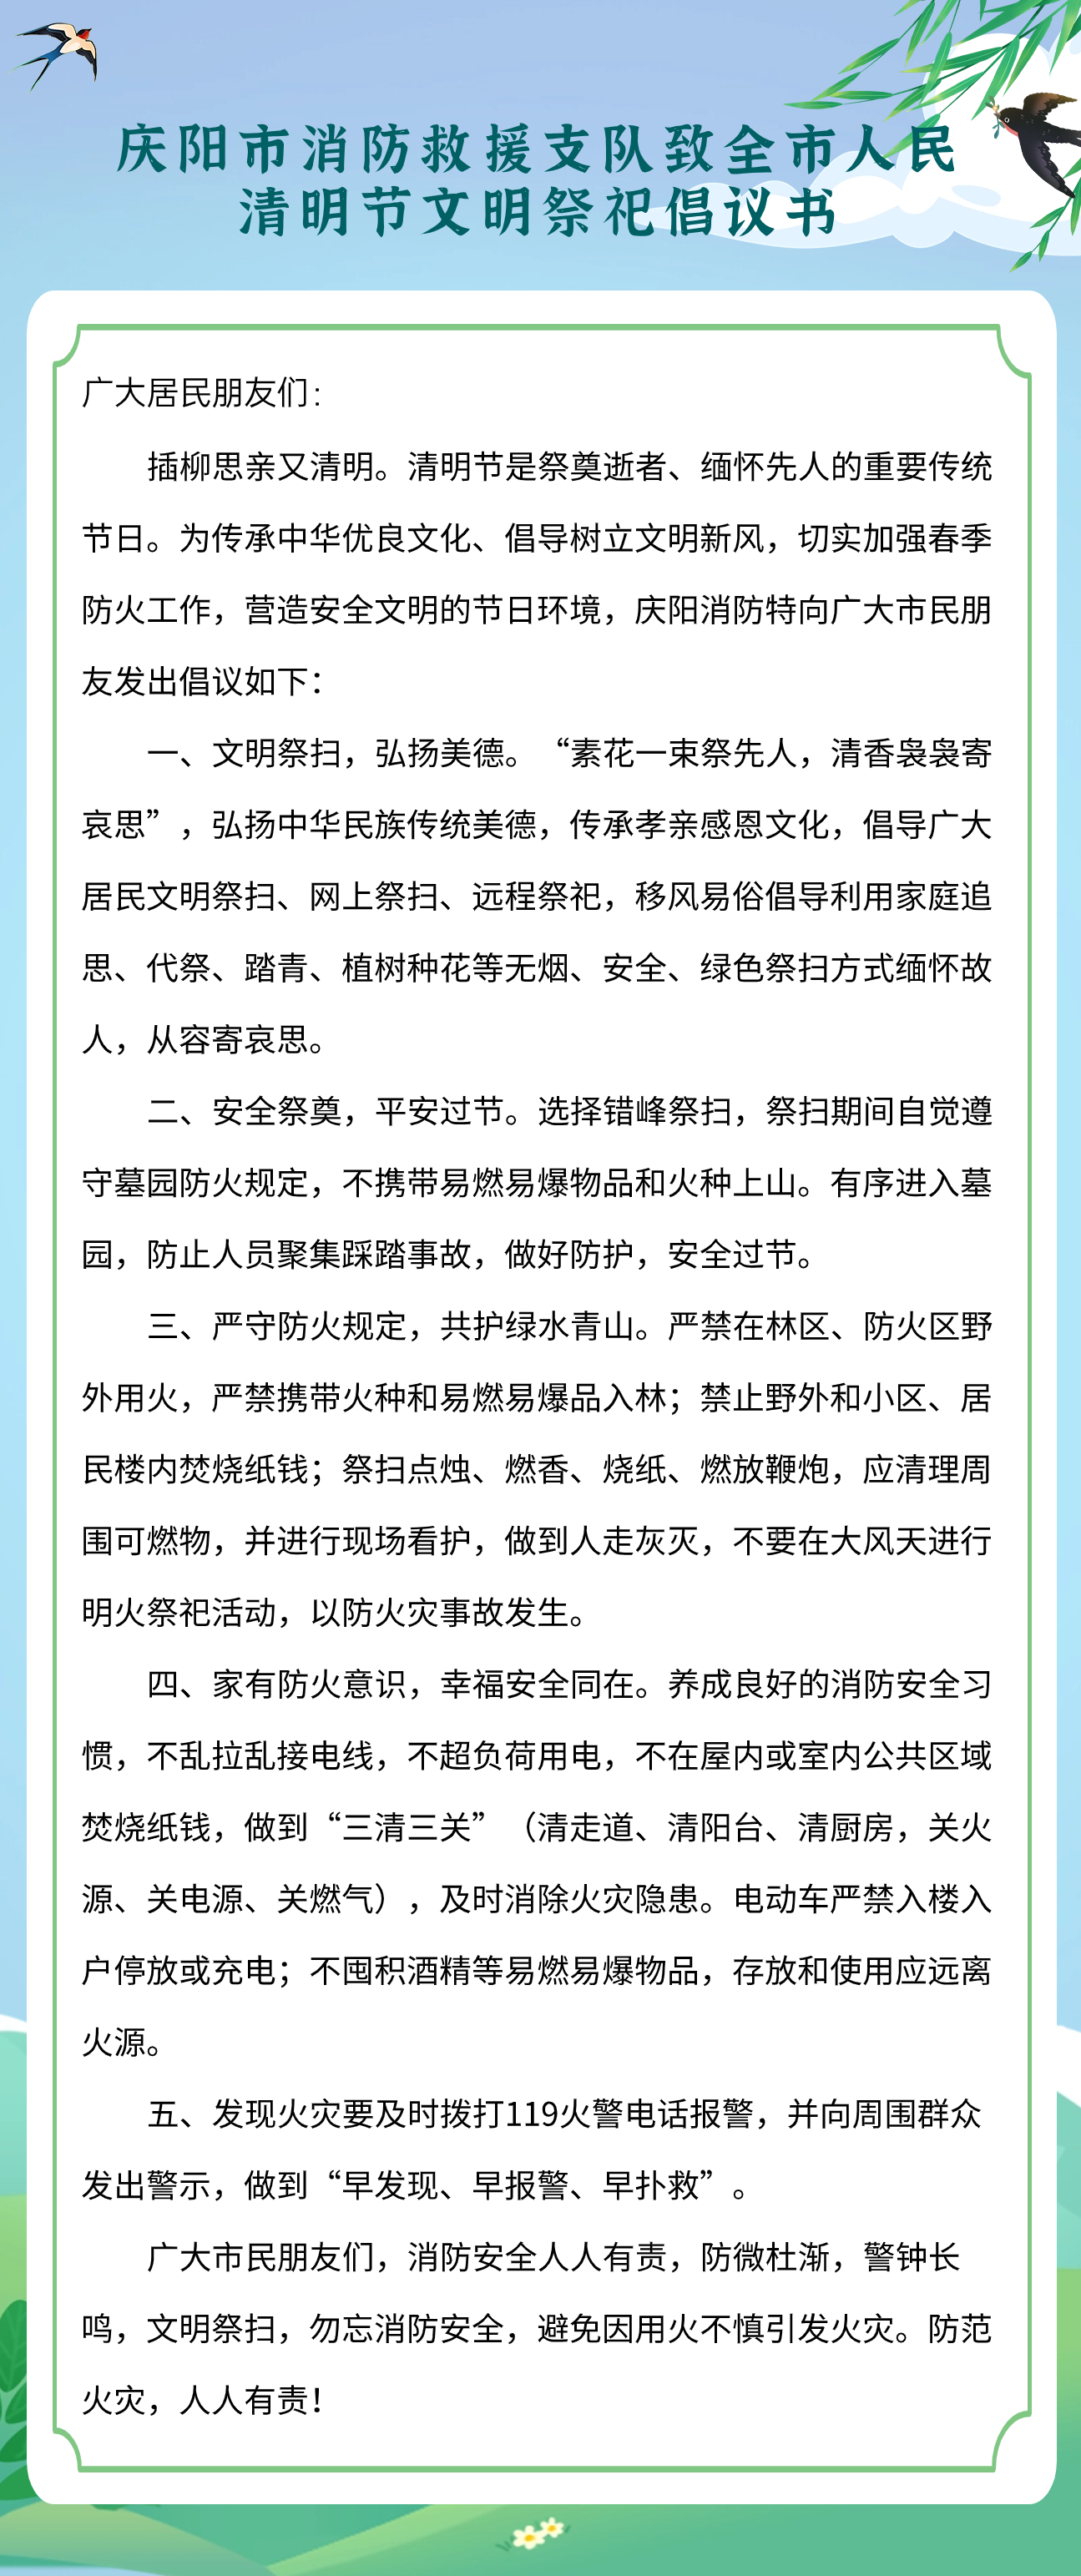 庆阳市消防救援支队致全市人民清明节文明祭祀倡议书